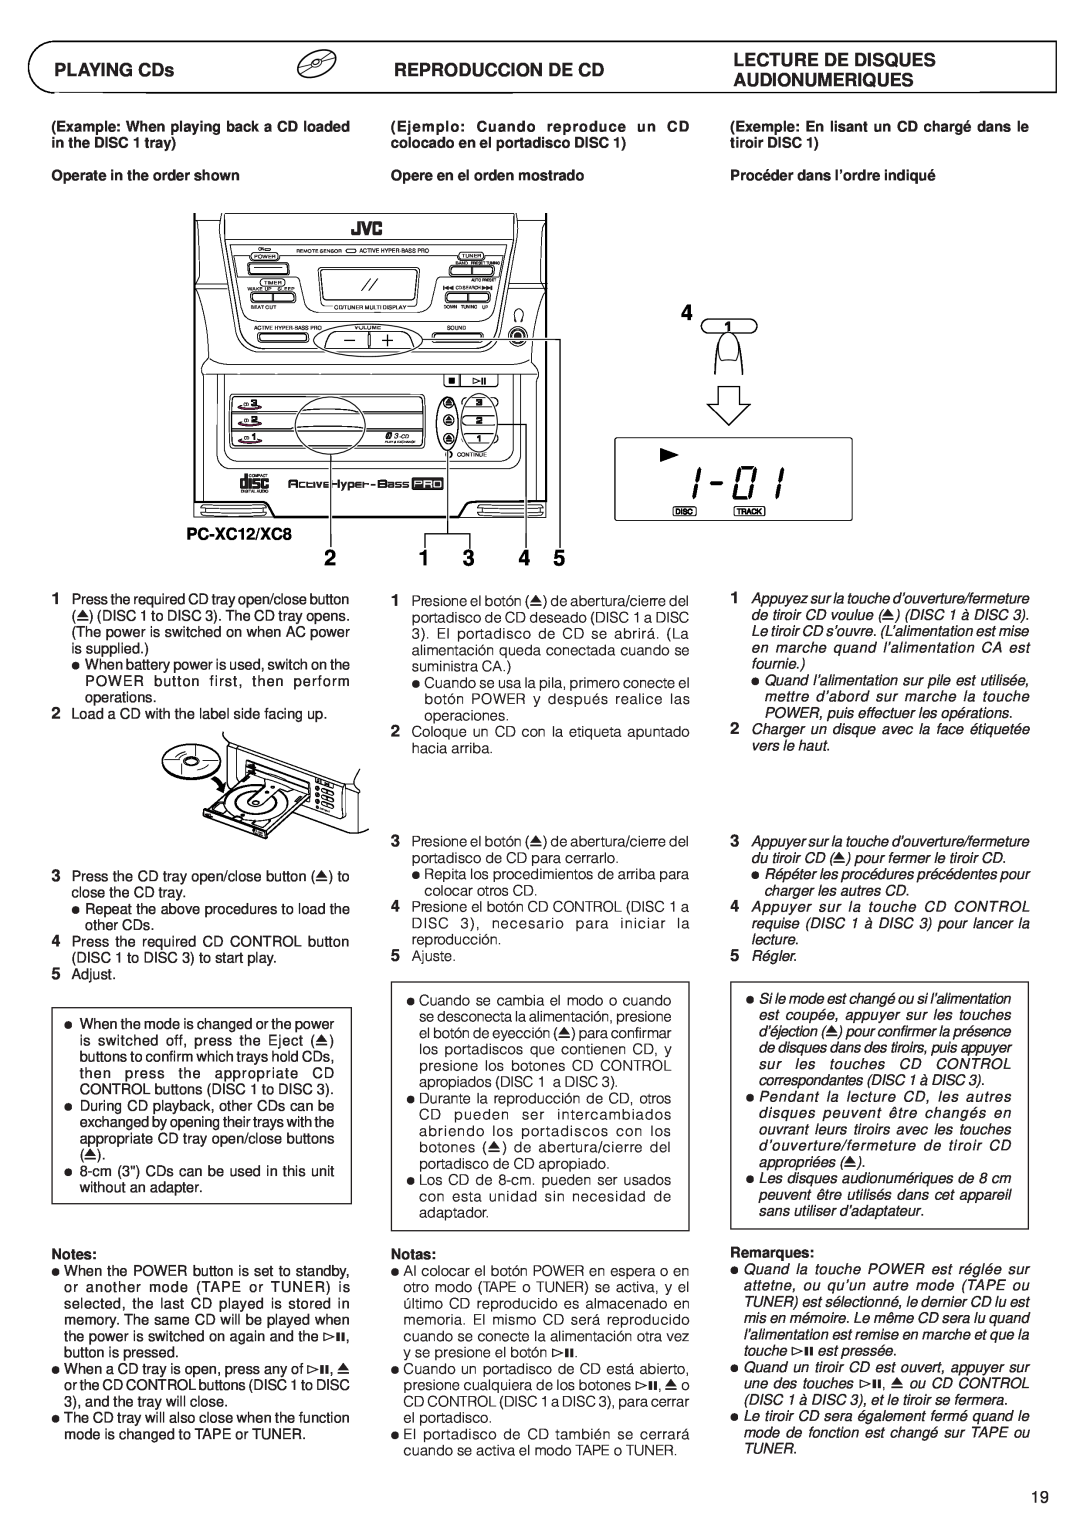 JVC PC-XC8 manual PLAYING CDs, Reproduccion De Cd, Lecture De Disques Audionumeriques, PC-XC12/XC8 